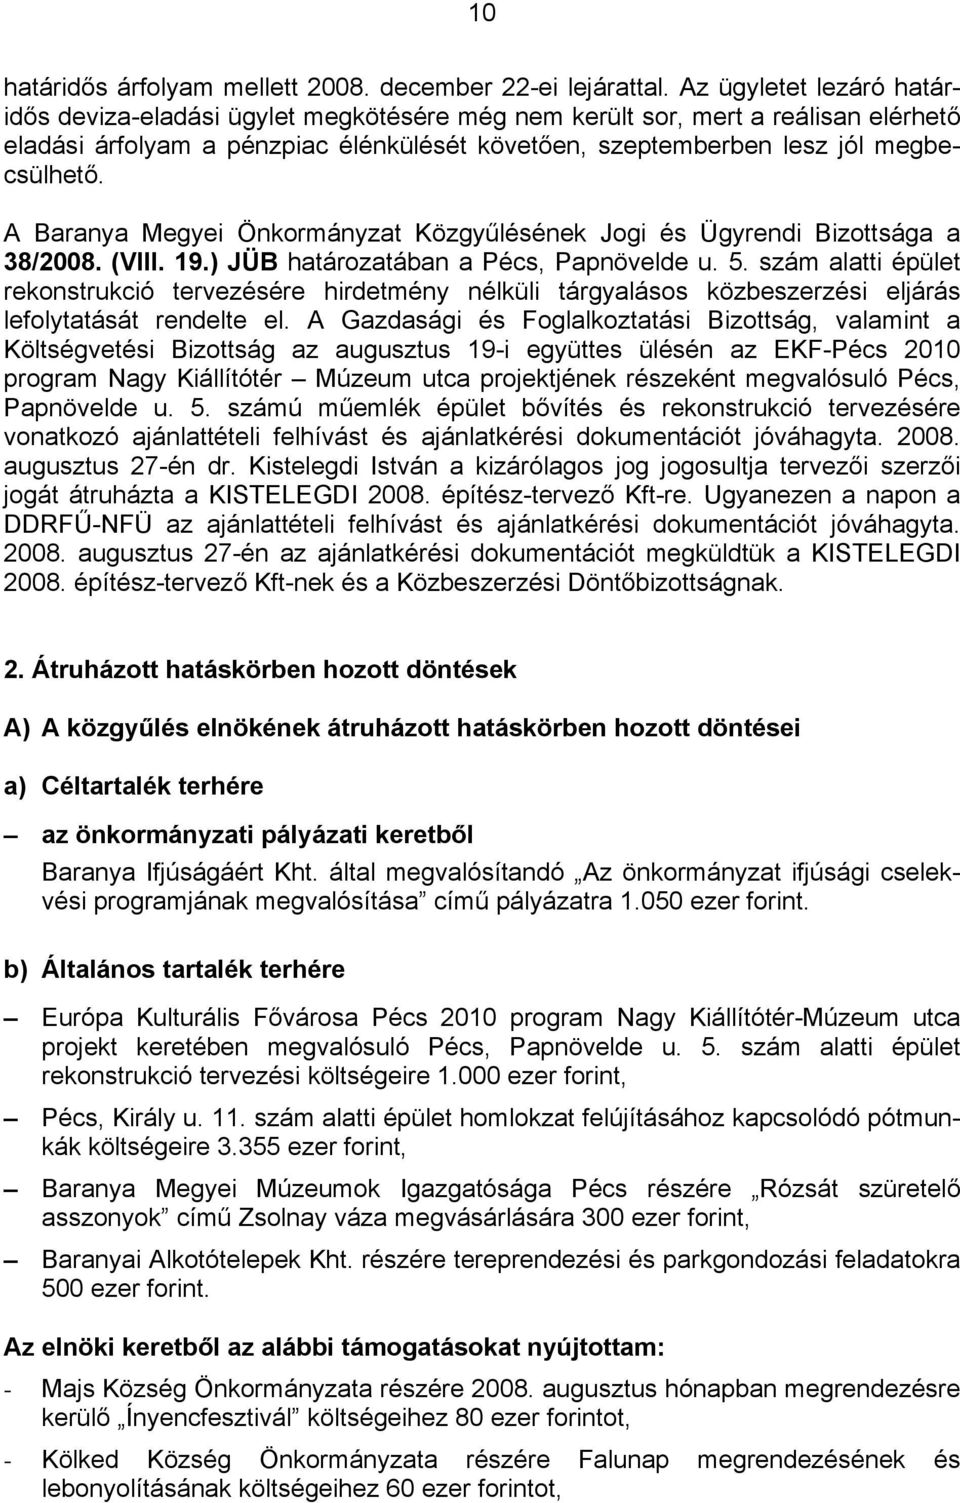 A Baranya Megyei Önkormányzat Közgyűlésének Jogi és Ügyrendi Bizottsága a 38/2008. (VIII. 19.) JÜB határozatában a Pécs, Papnövelde u. 5.